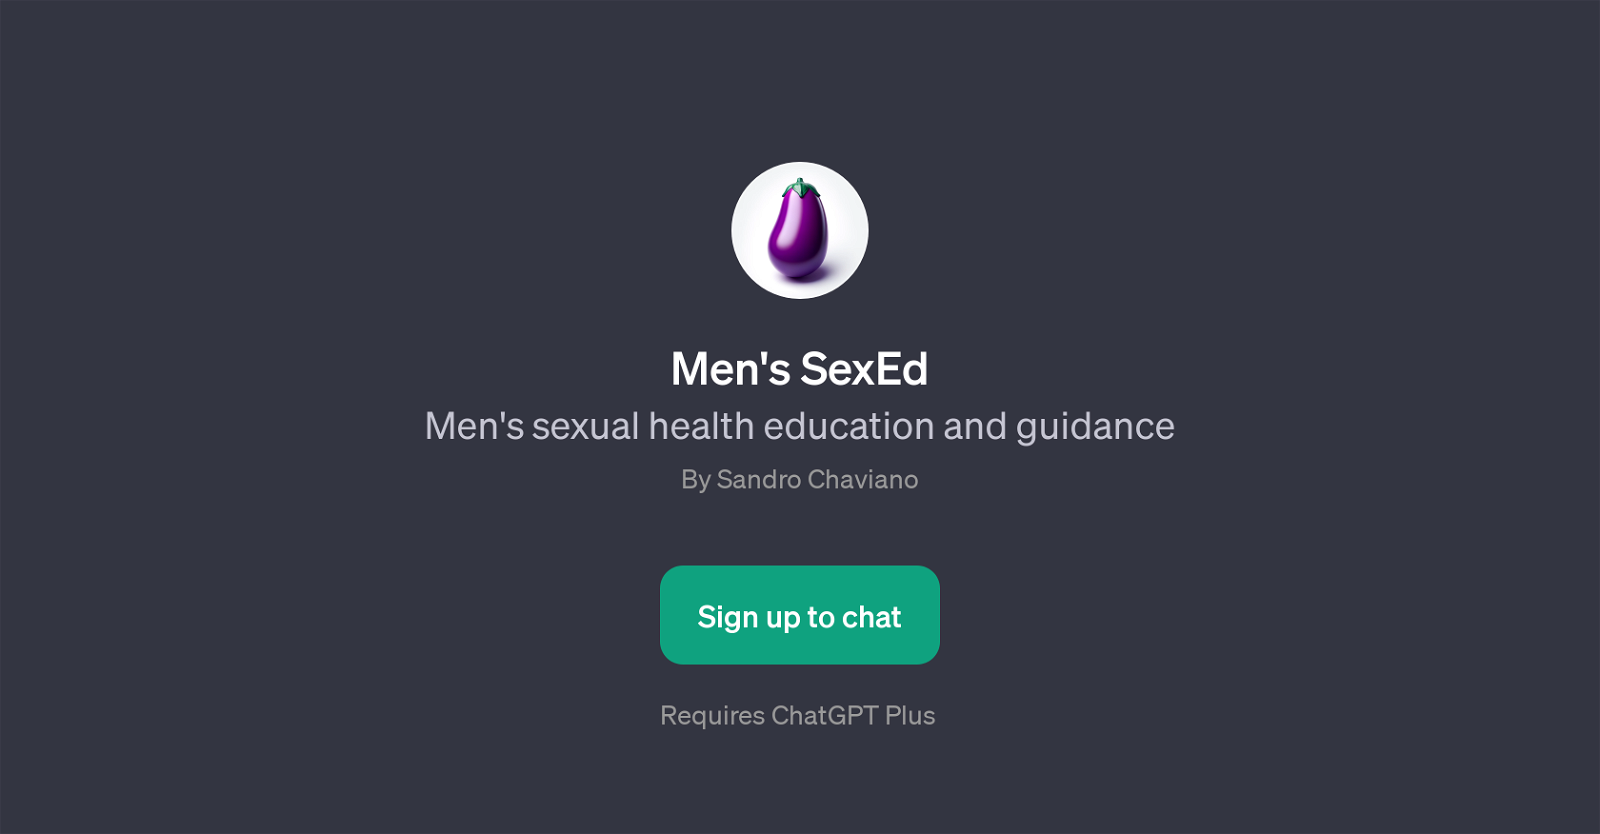 Men's SexEd website